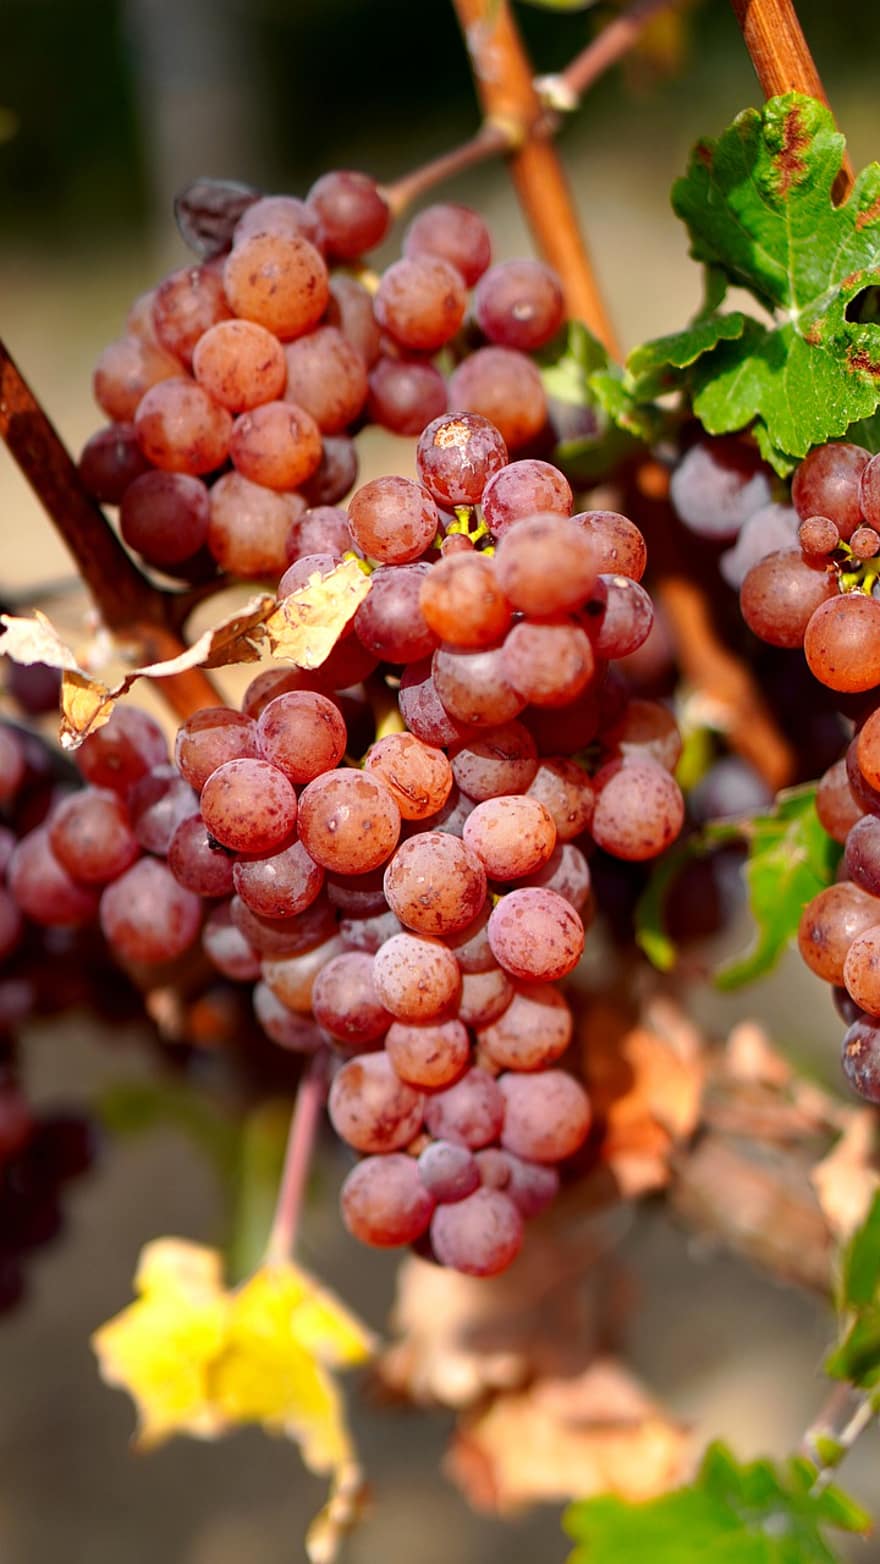 vindruvor, frukt, vingård, vinranka, vin, mat, hälsosam, vitaminer, näring, vinodling, lantbruk